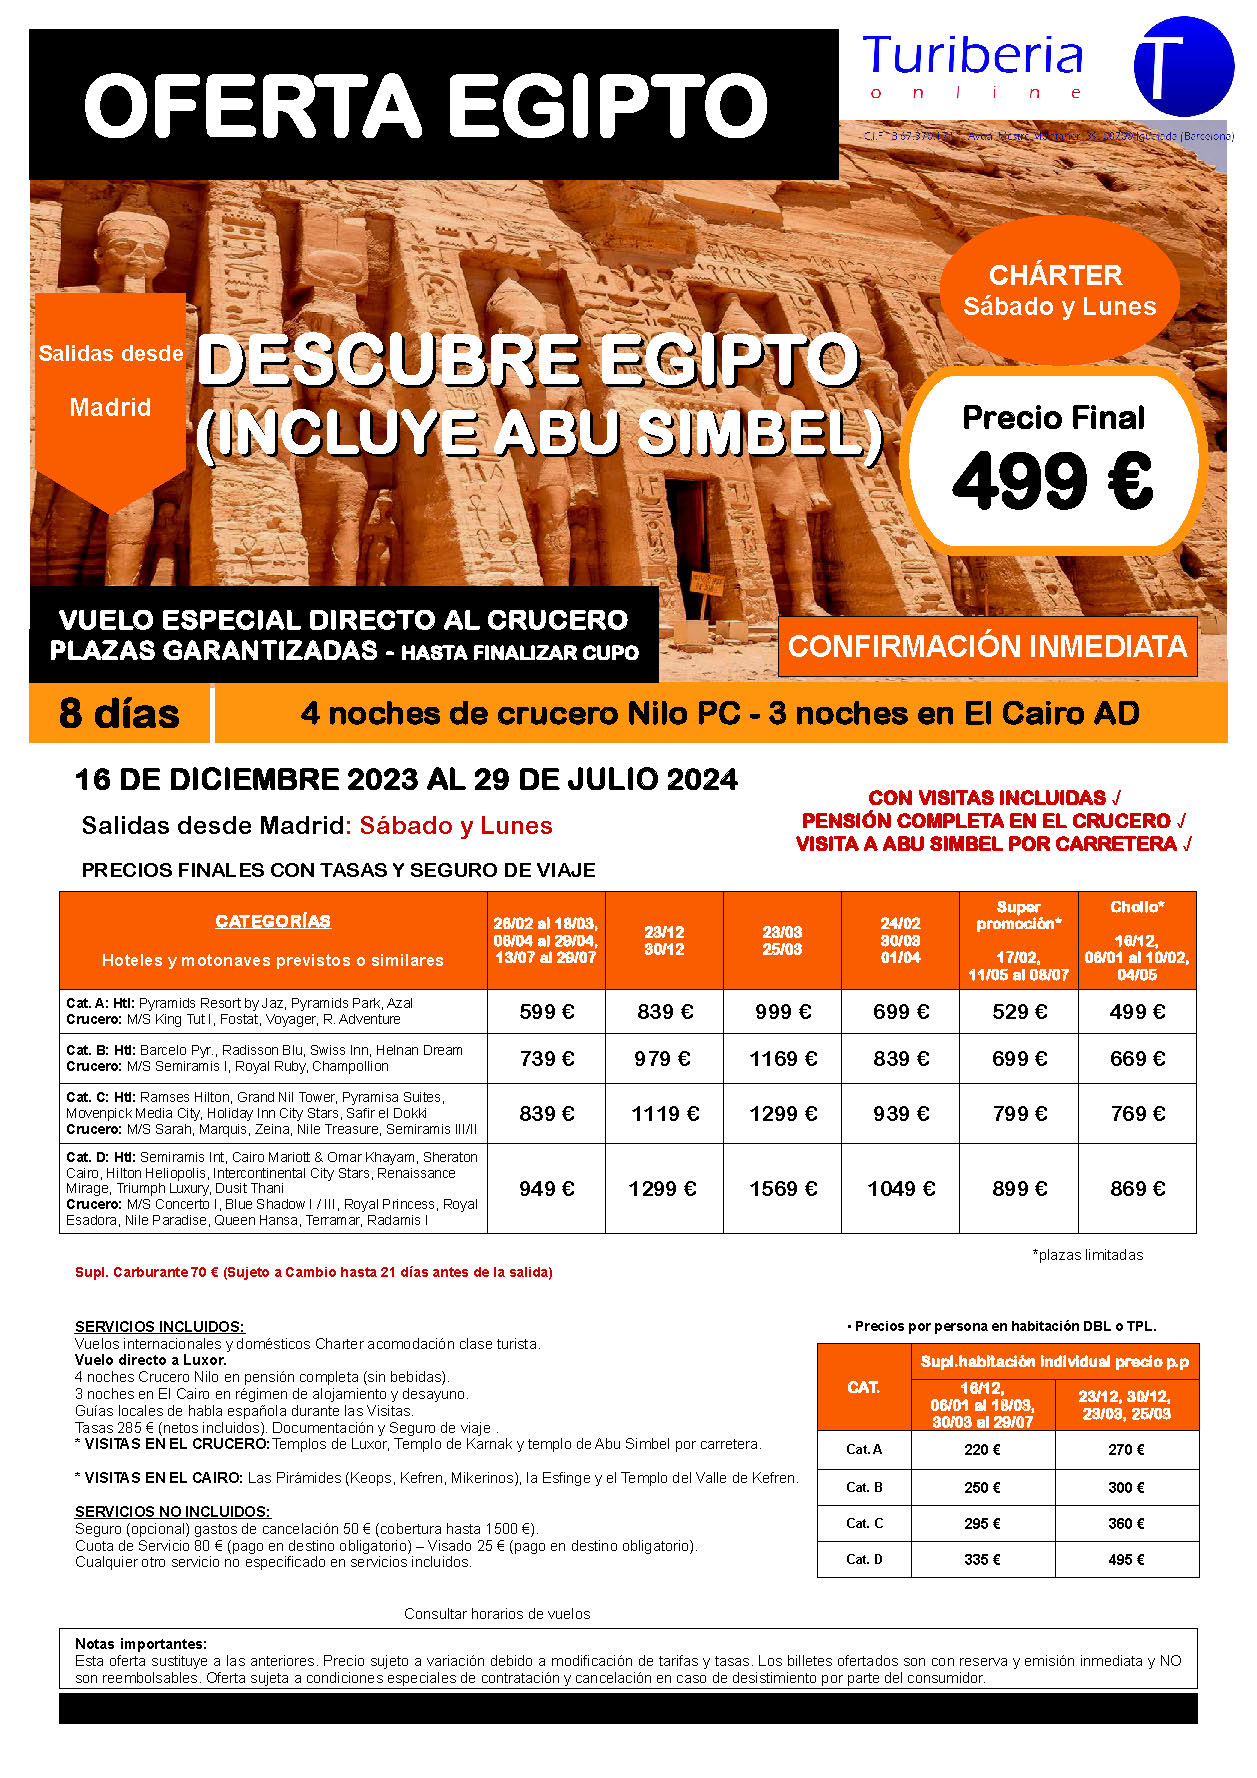 Oferta Turiberia circuito Descubre Egipto con Abu Simbel charter 8 dias salidas Enero a Julio 2024 en vuelo directo a Luxor desde Madrid